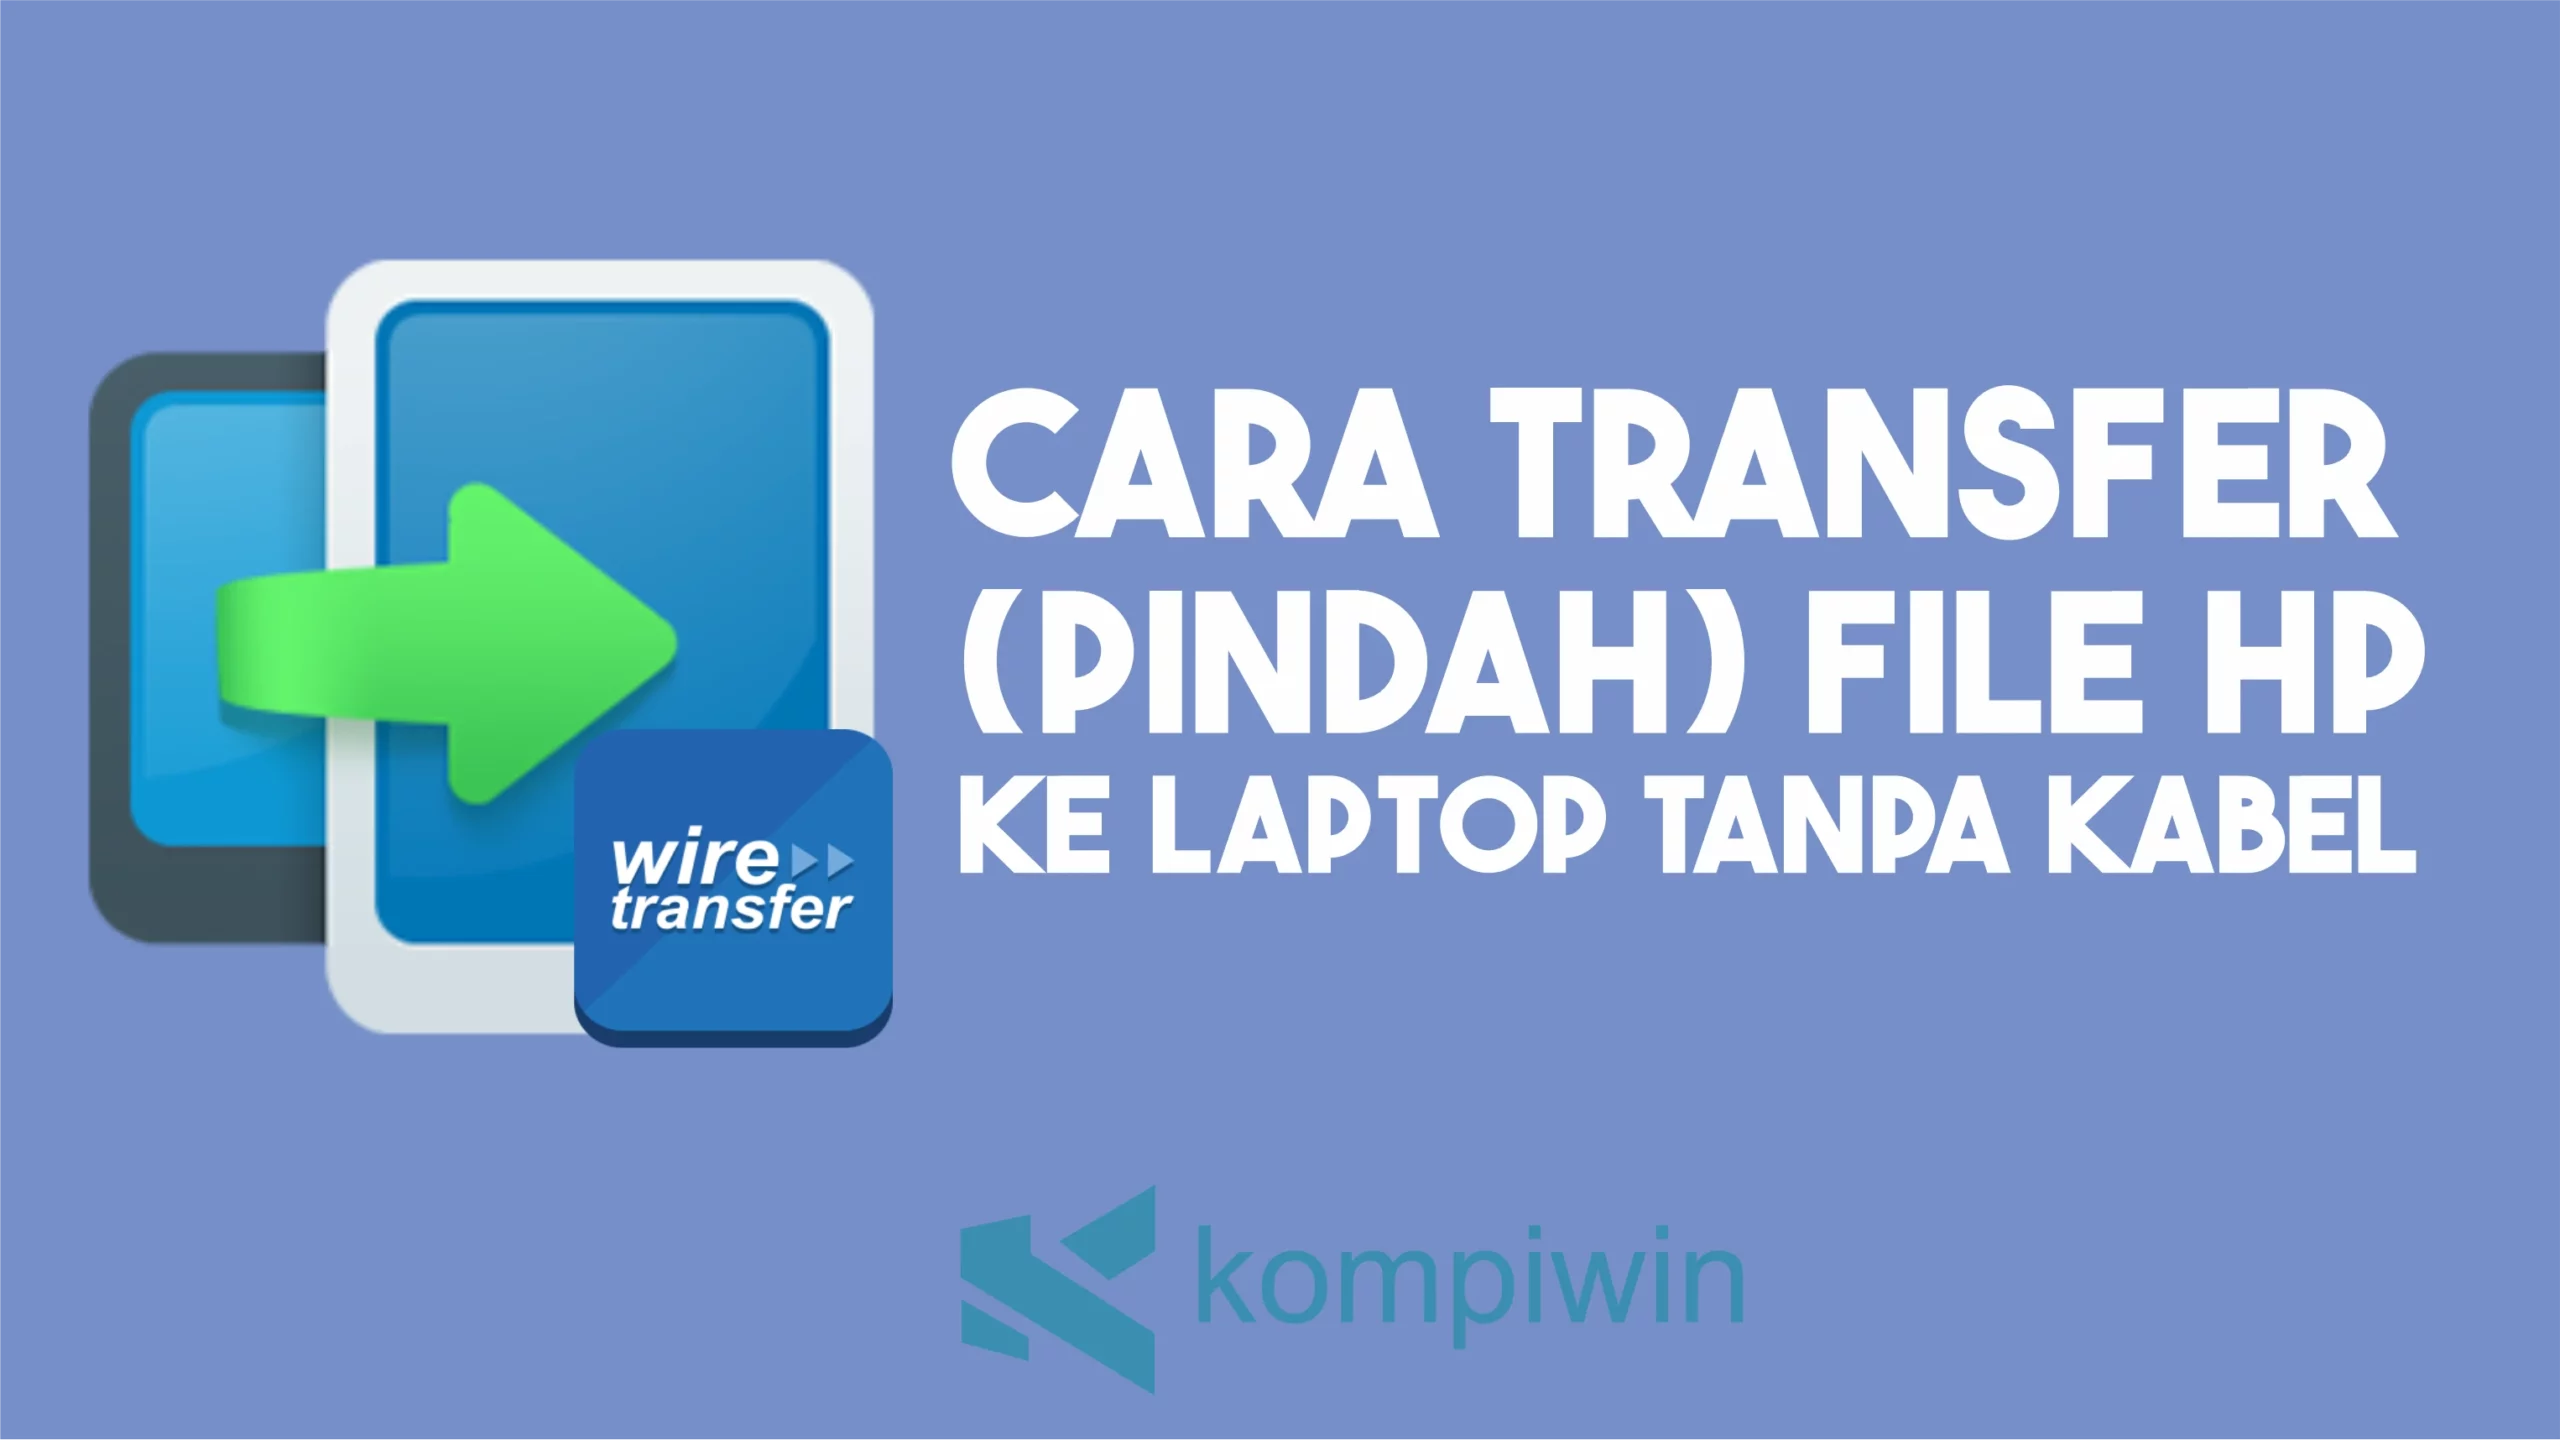 Cara Transfer (Pindah) File HP ke Laptop Tanpa Kabel